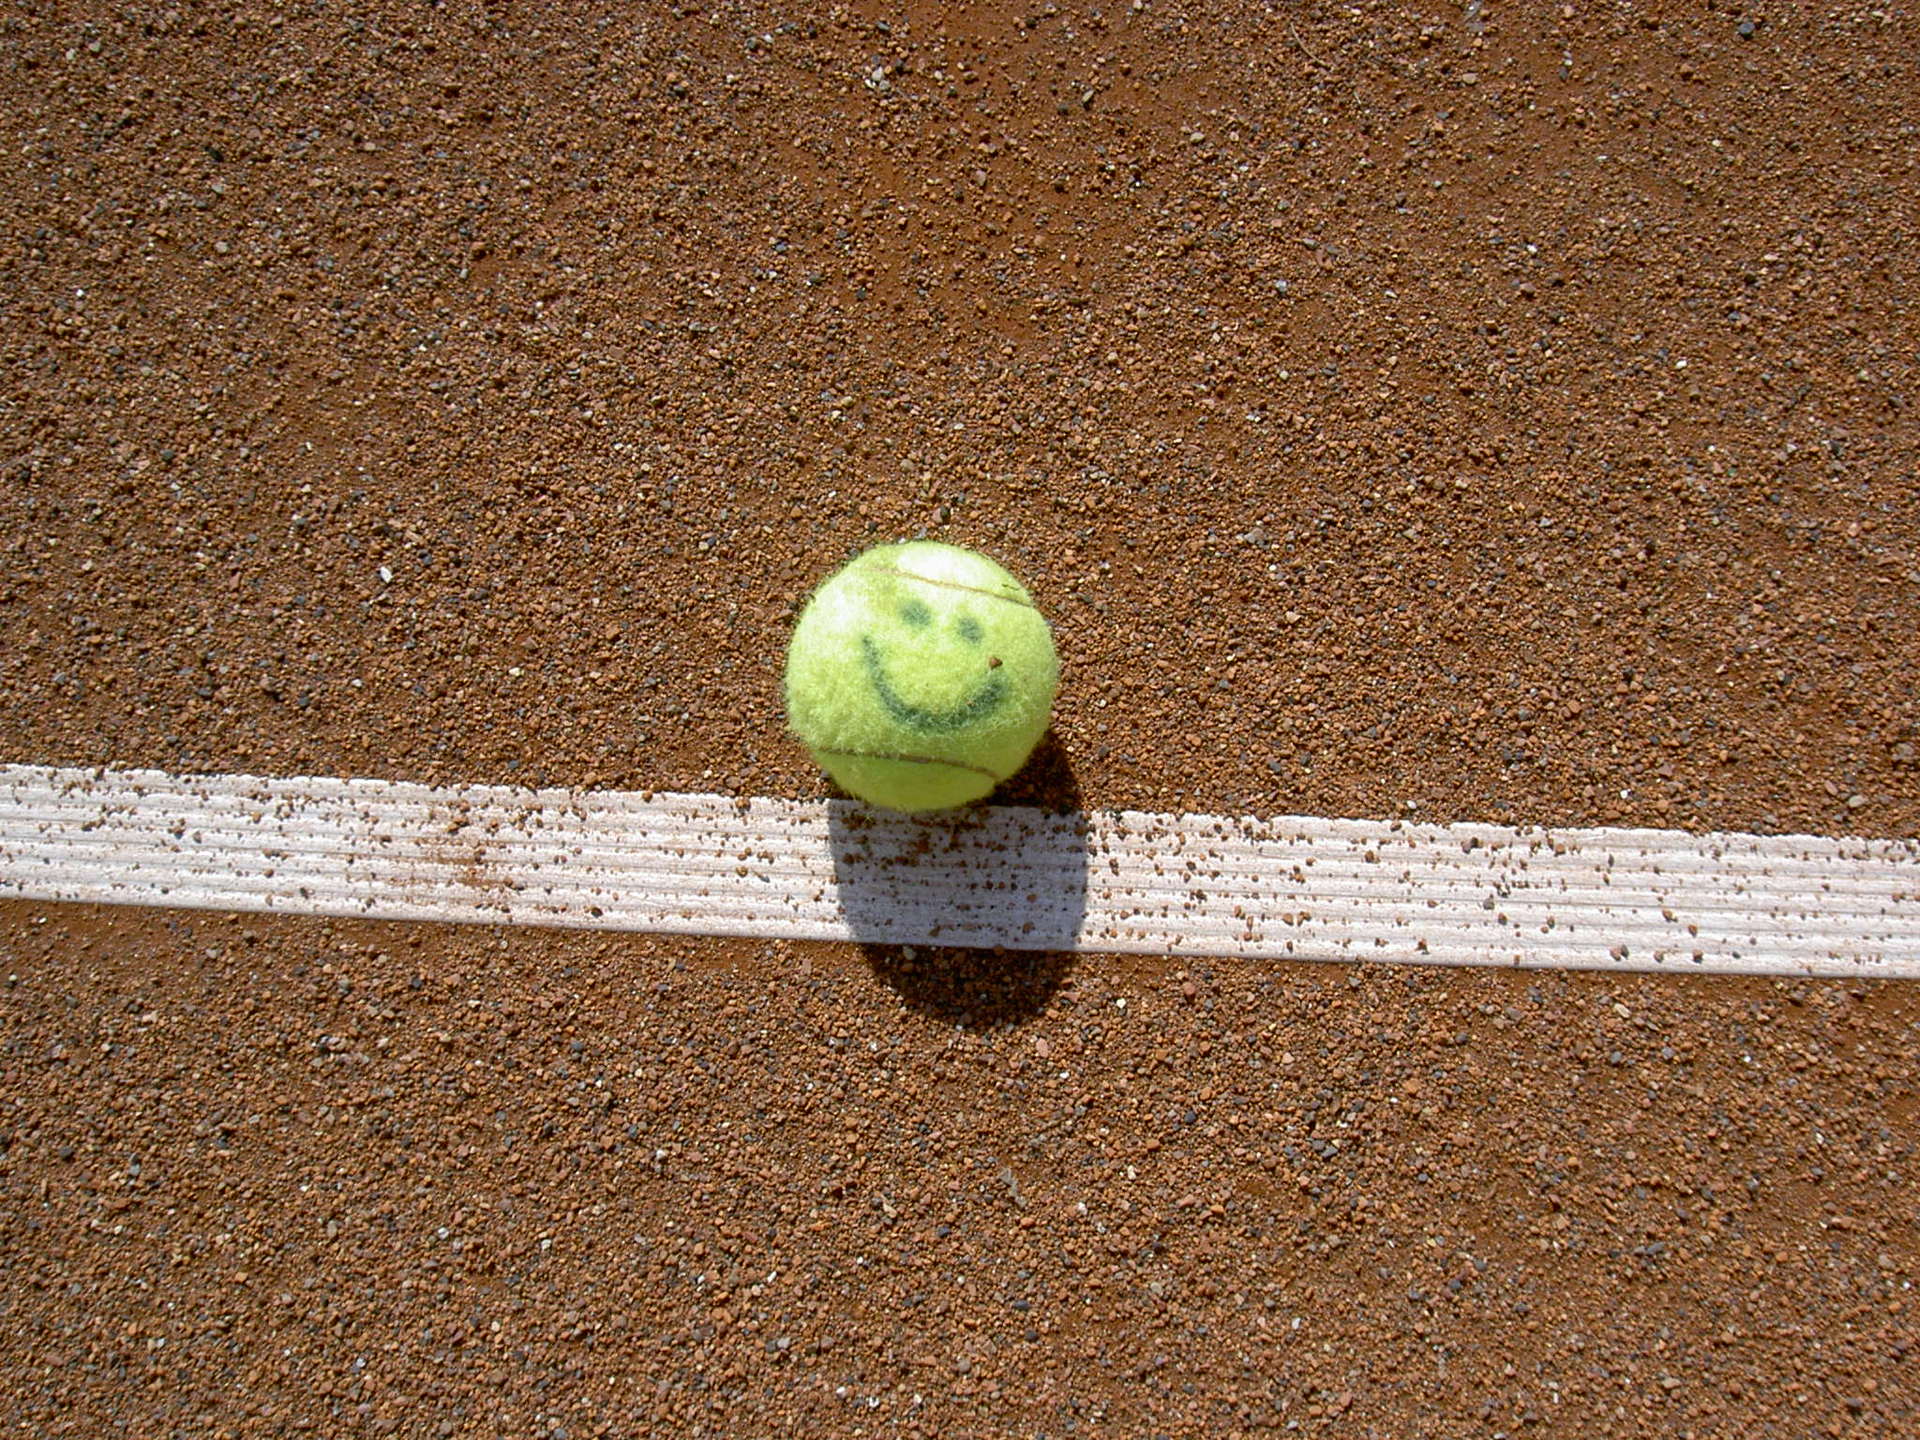 Tennis is Fun